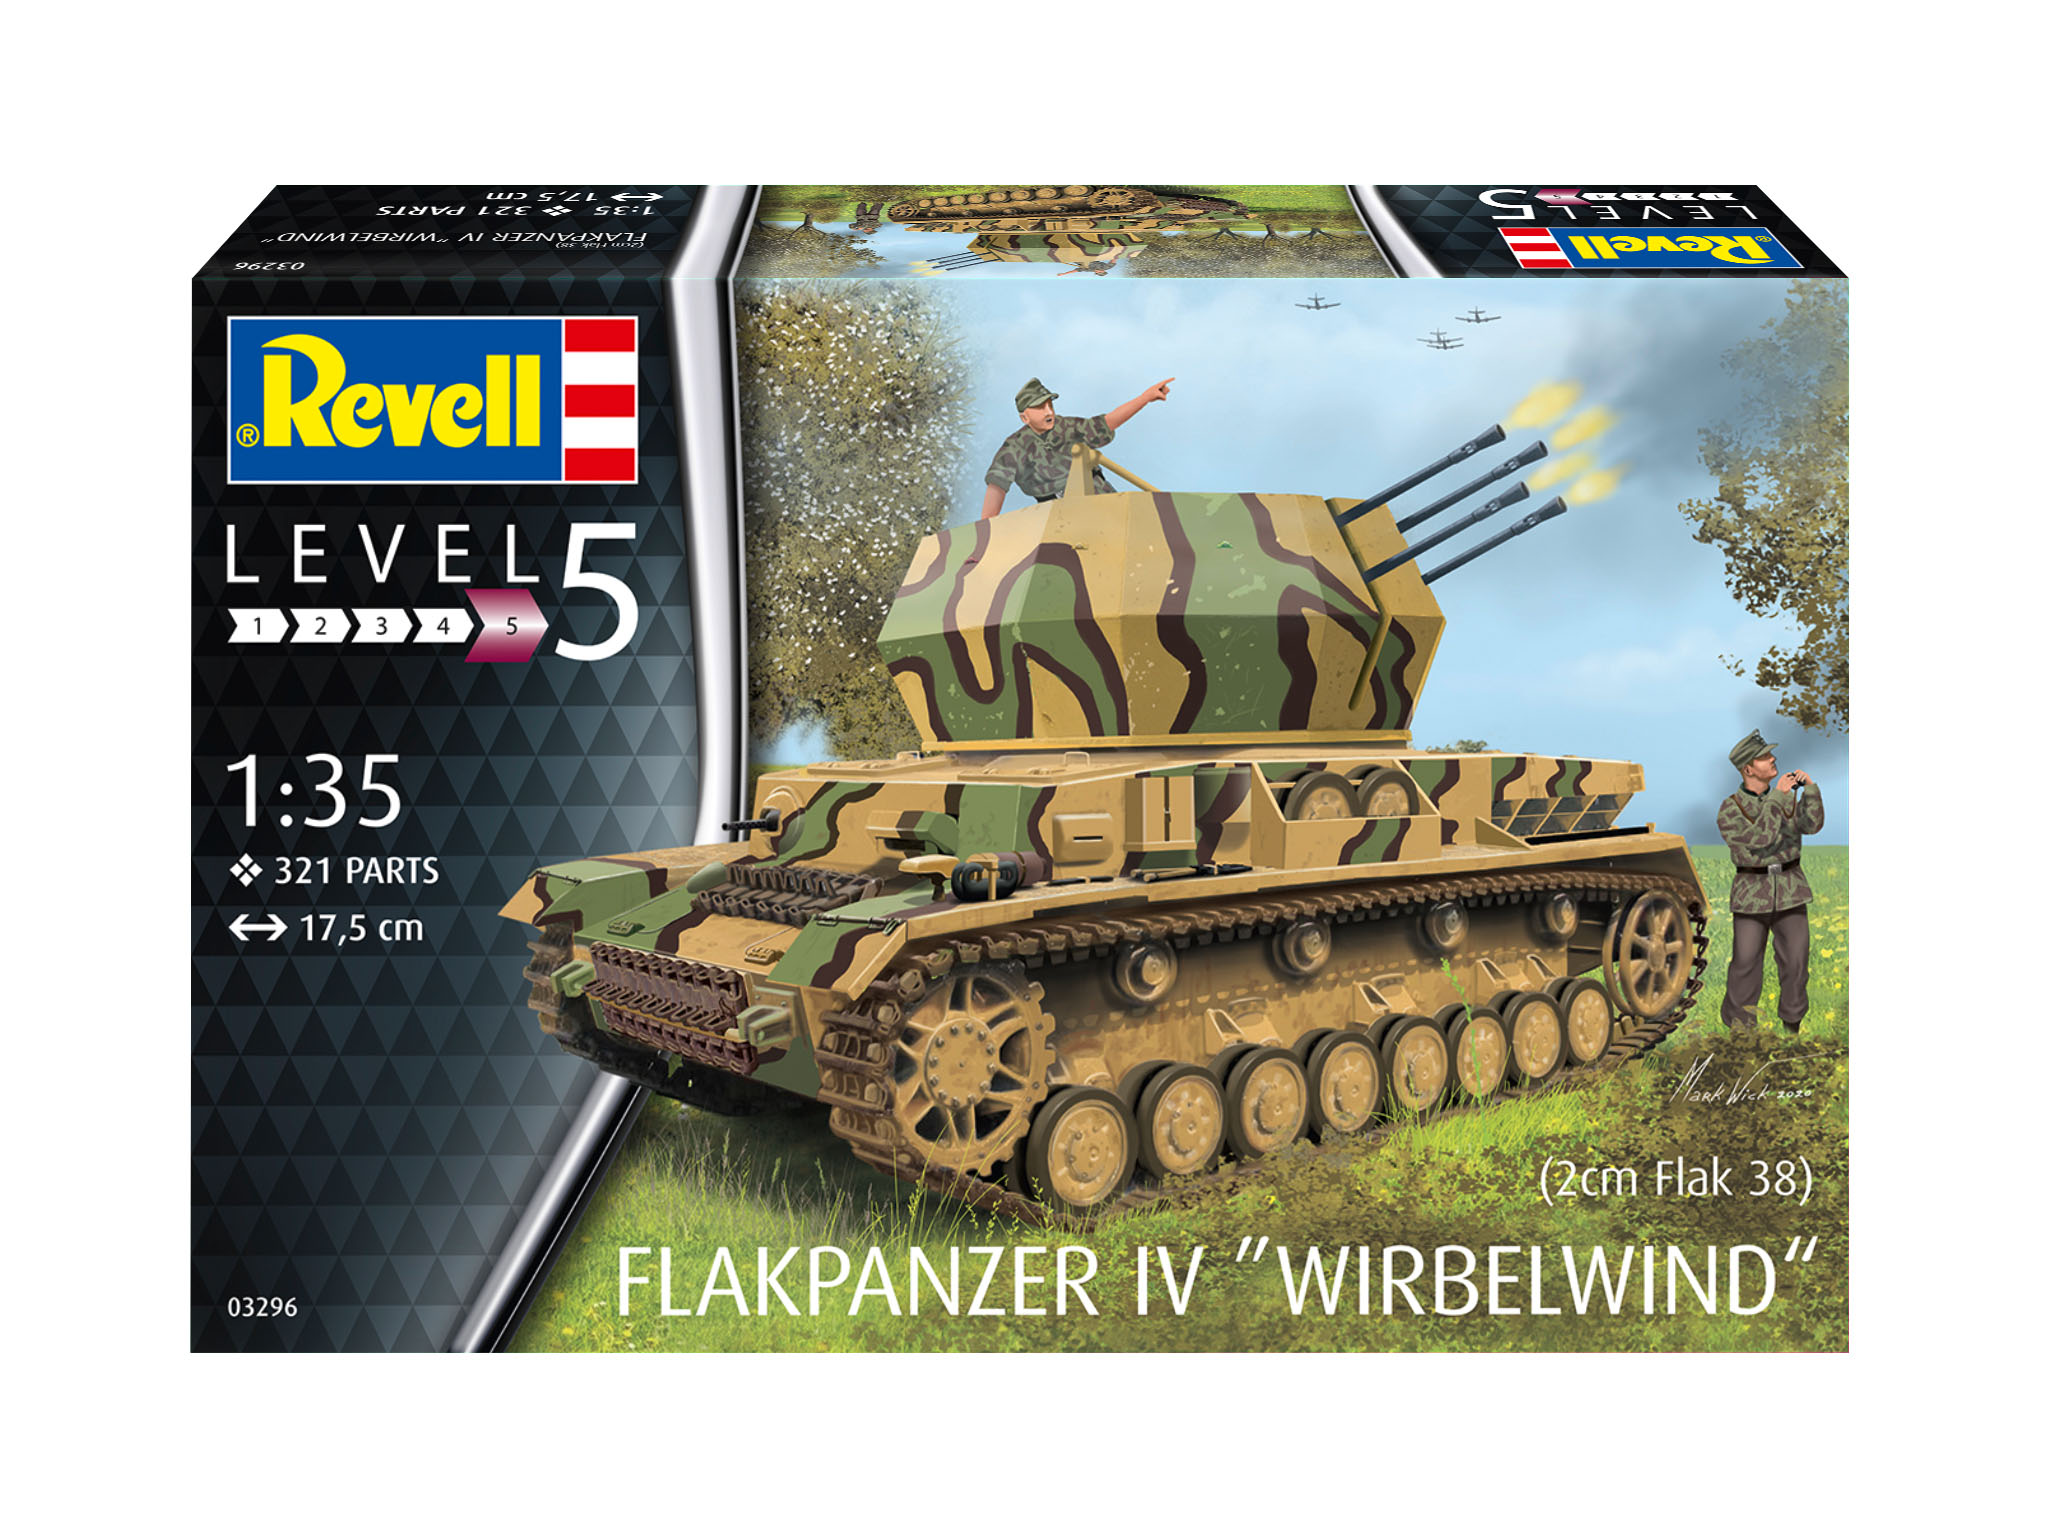 Flakpanzer IV Wirbelwind - 03296